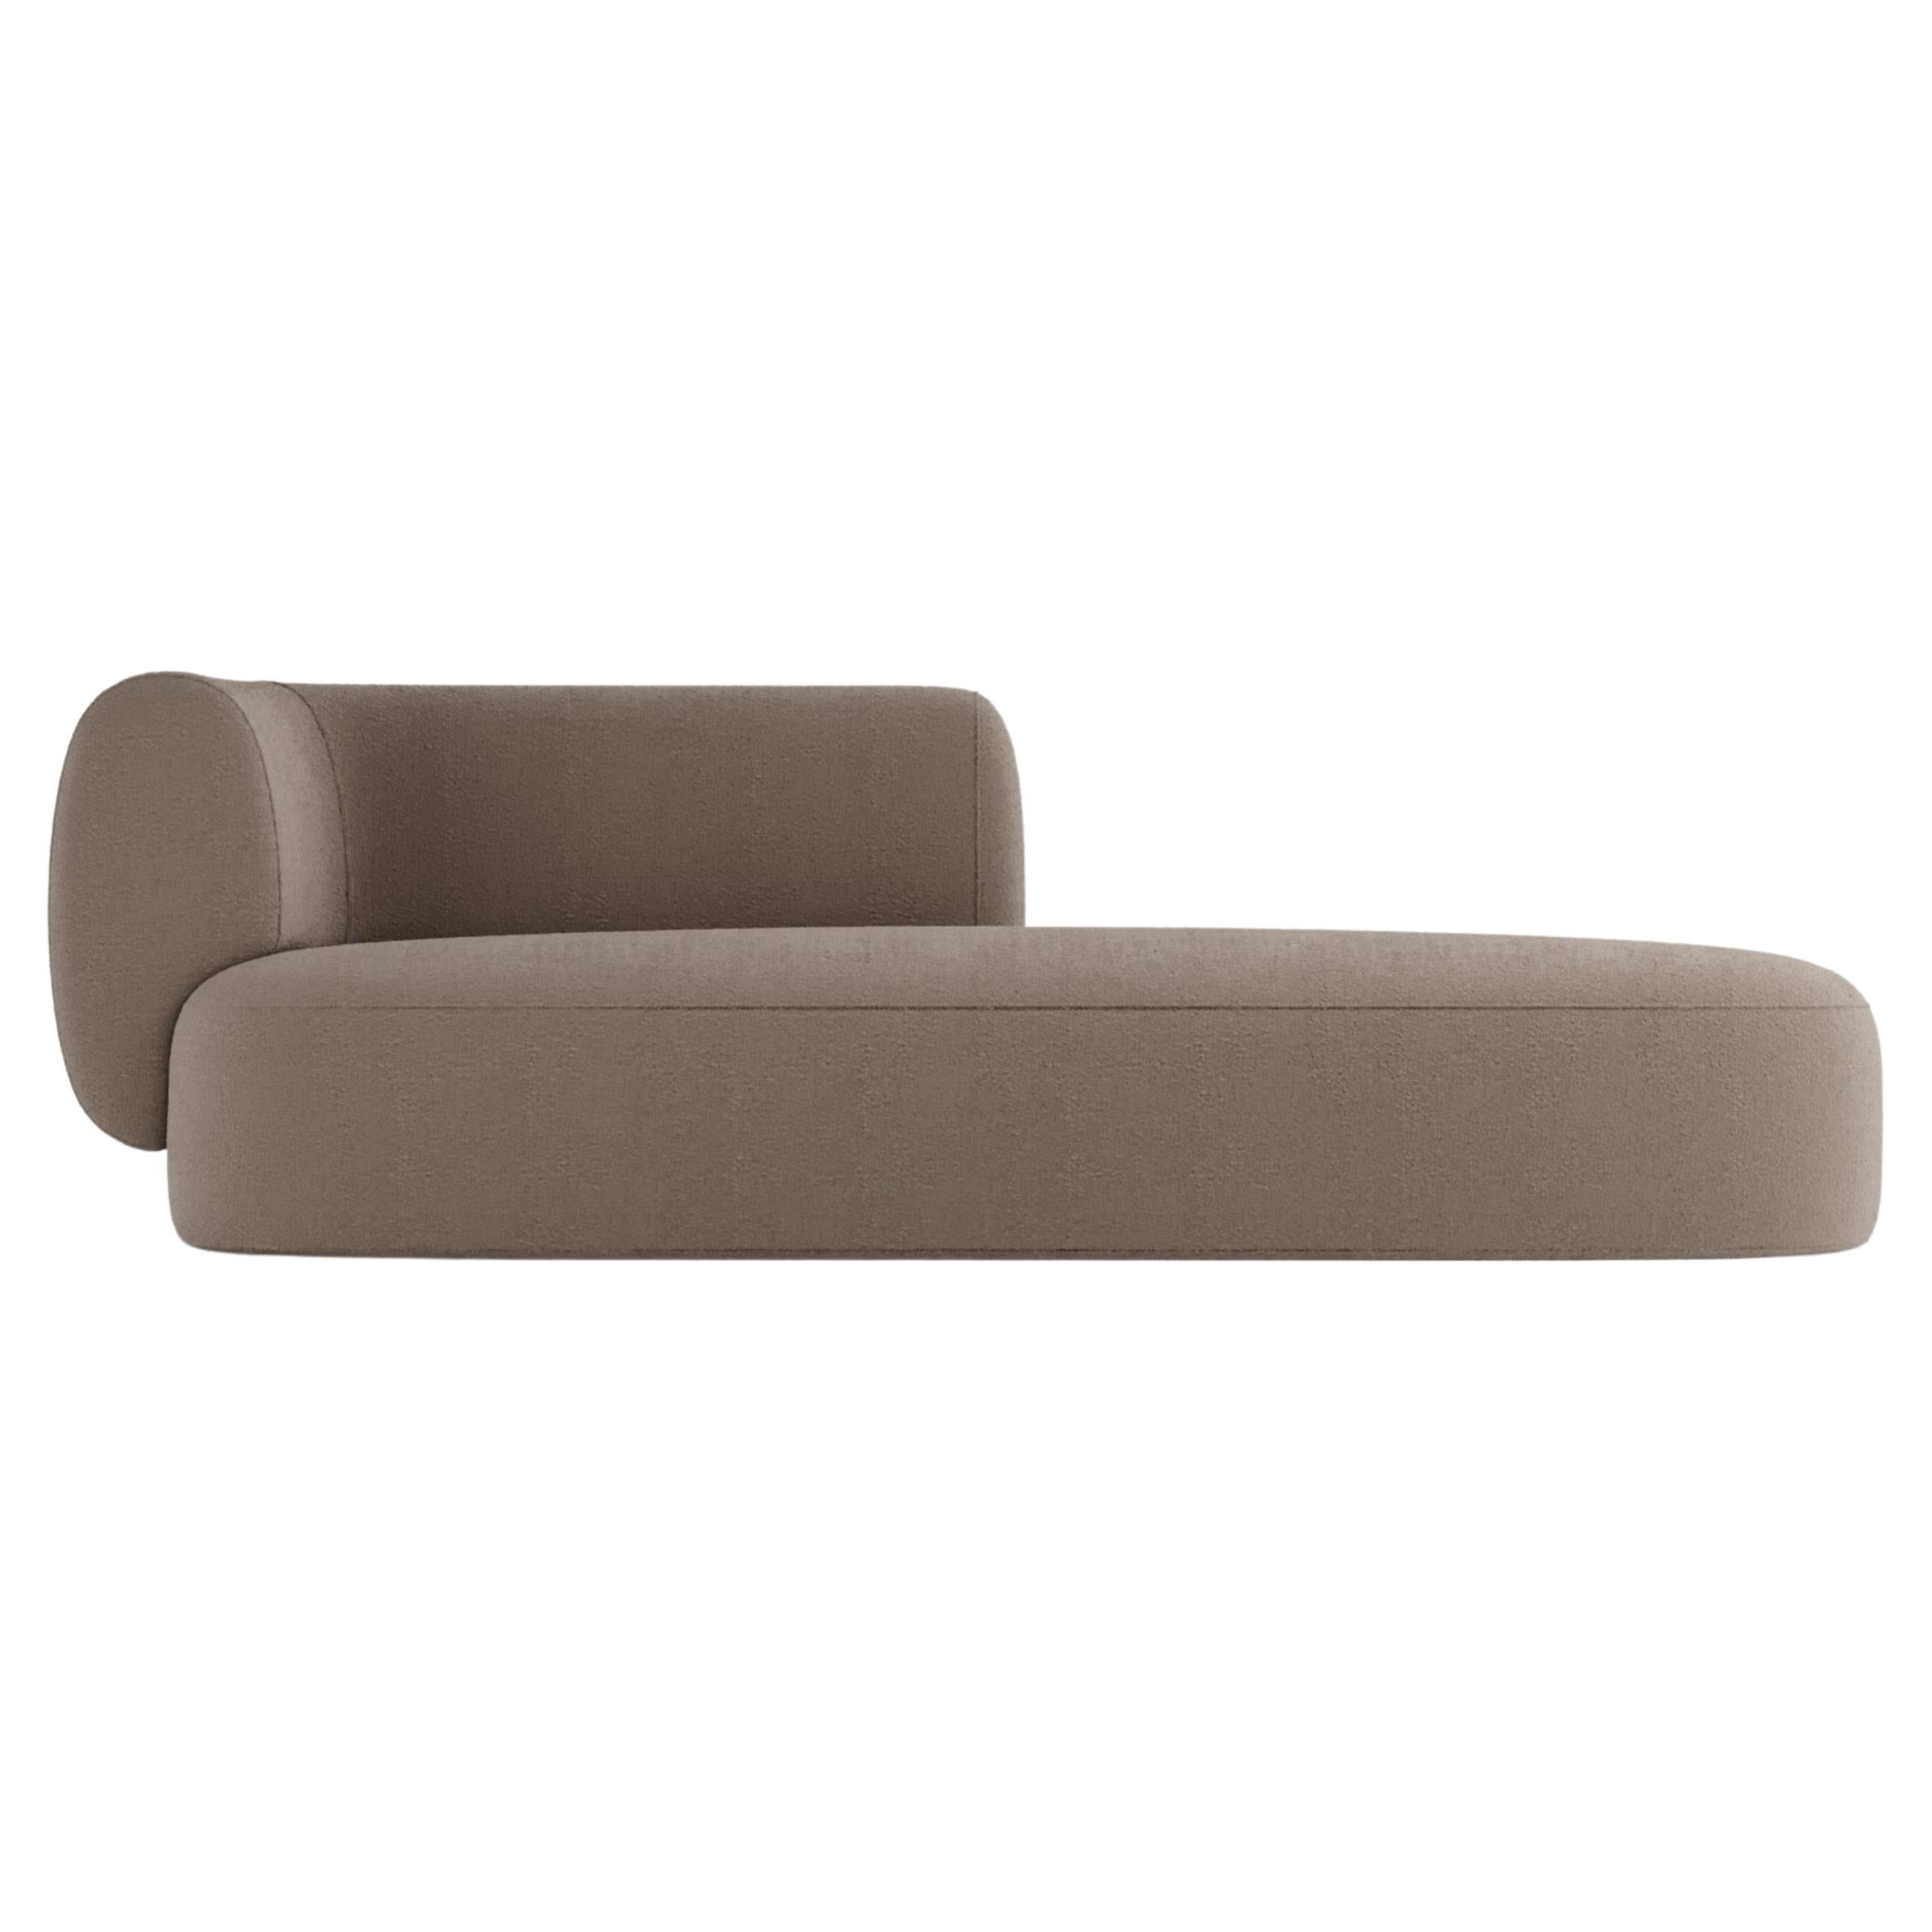 Collector Hug Sofa 3 Seater Half Backrest Fabric Bouclé Brown by Ferrianisbolgi